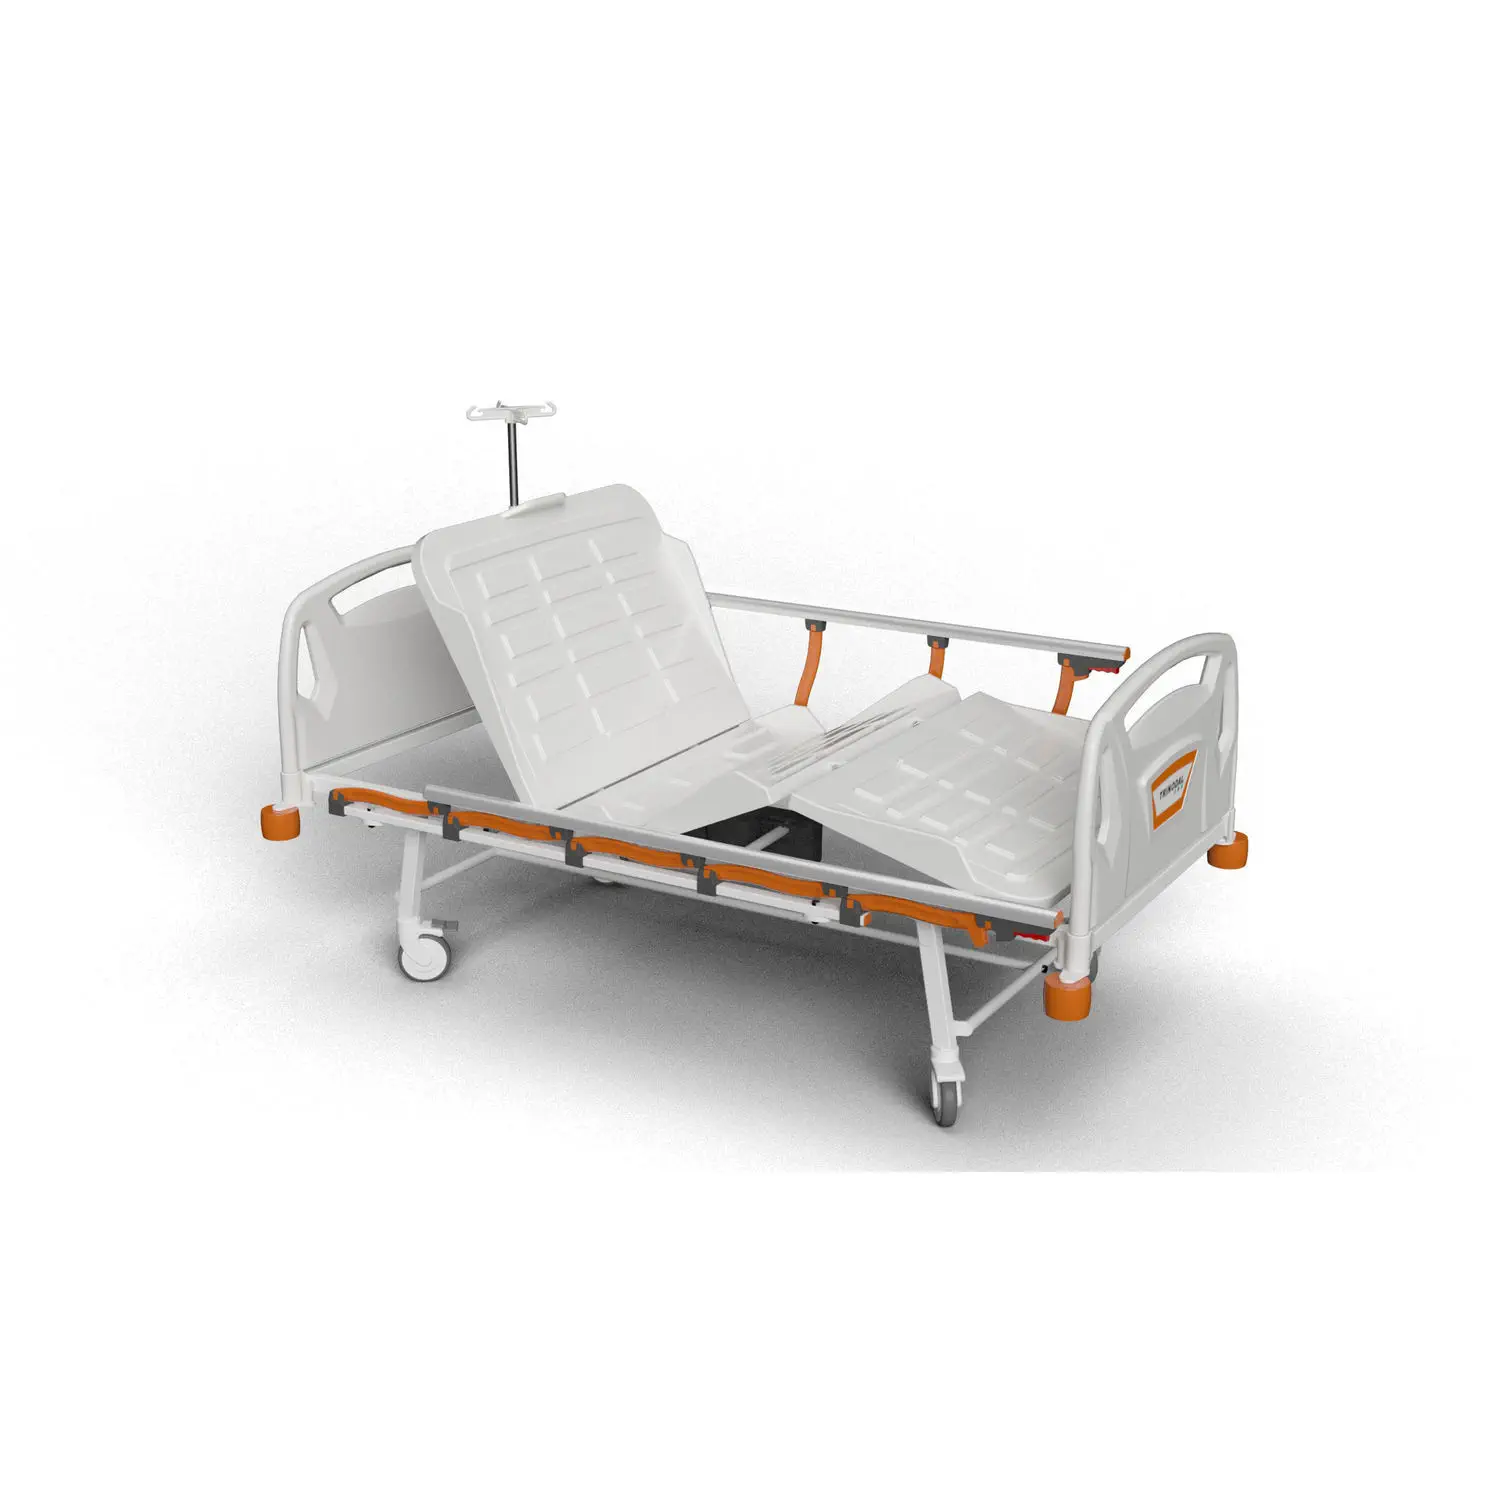 เตียงผู้ป่วยชนิดสามไกร์ปรับด้วยไฟฟ้าราวสไลด์ พร้อมเบาะและเสาน้ำเกลือ  Hospital bed DE 1010  Trinodal